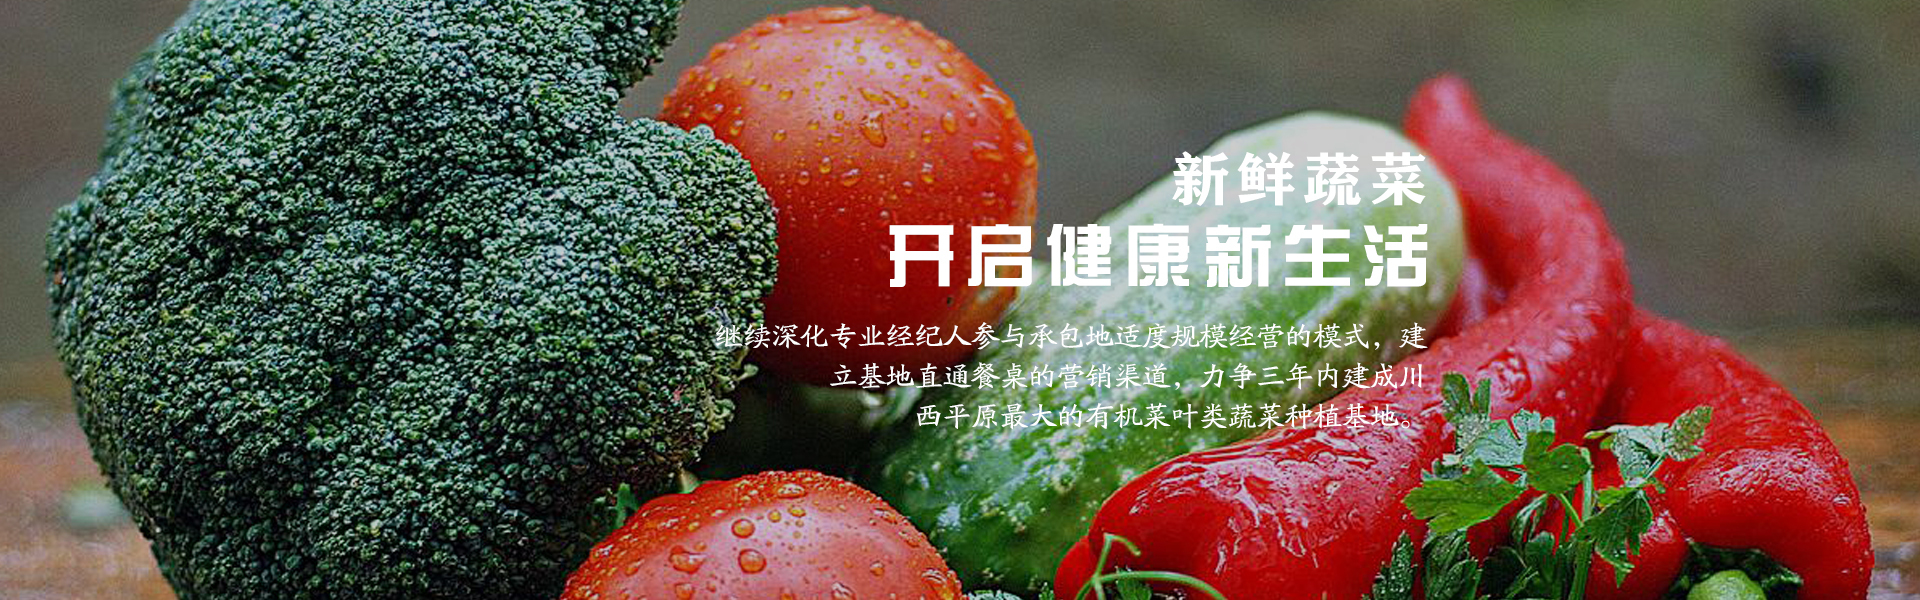 广元绿色健康蔬菜批发商_绿色健康招商平台-成都市录超农业有限责任公司